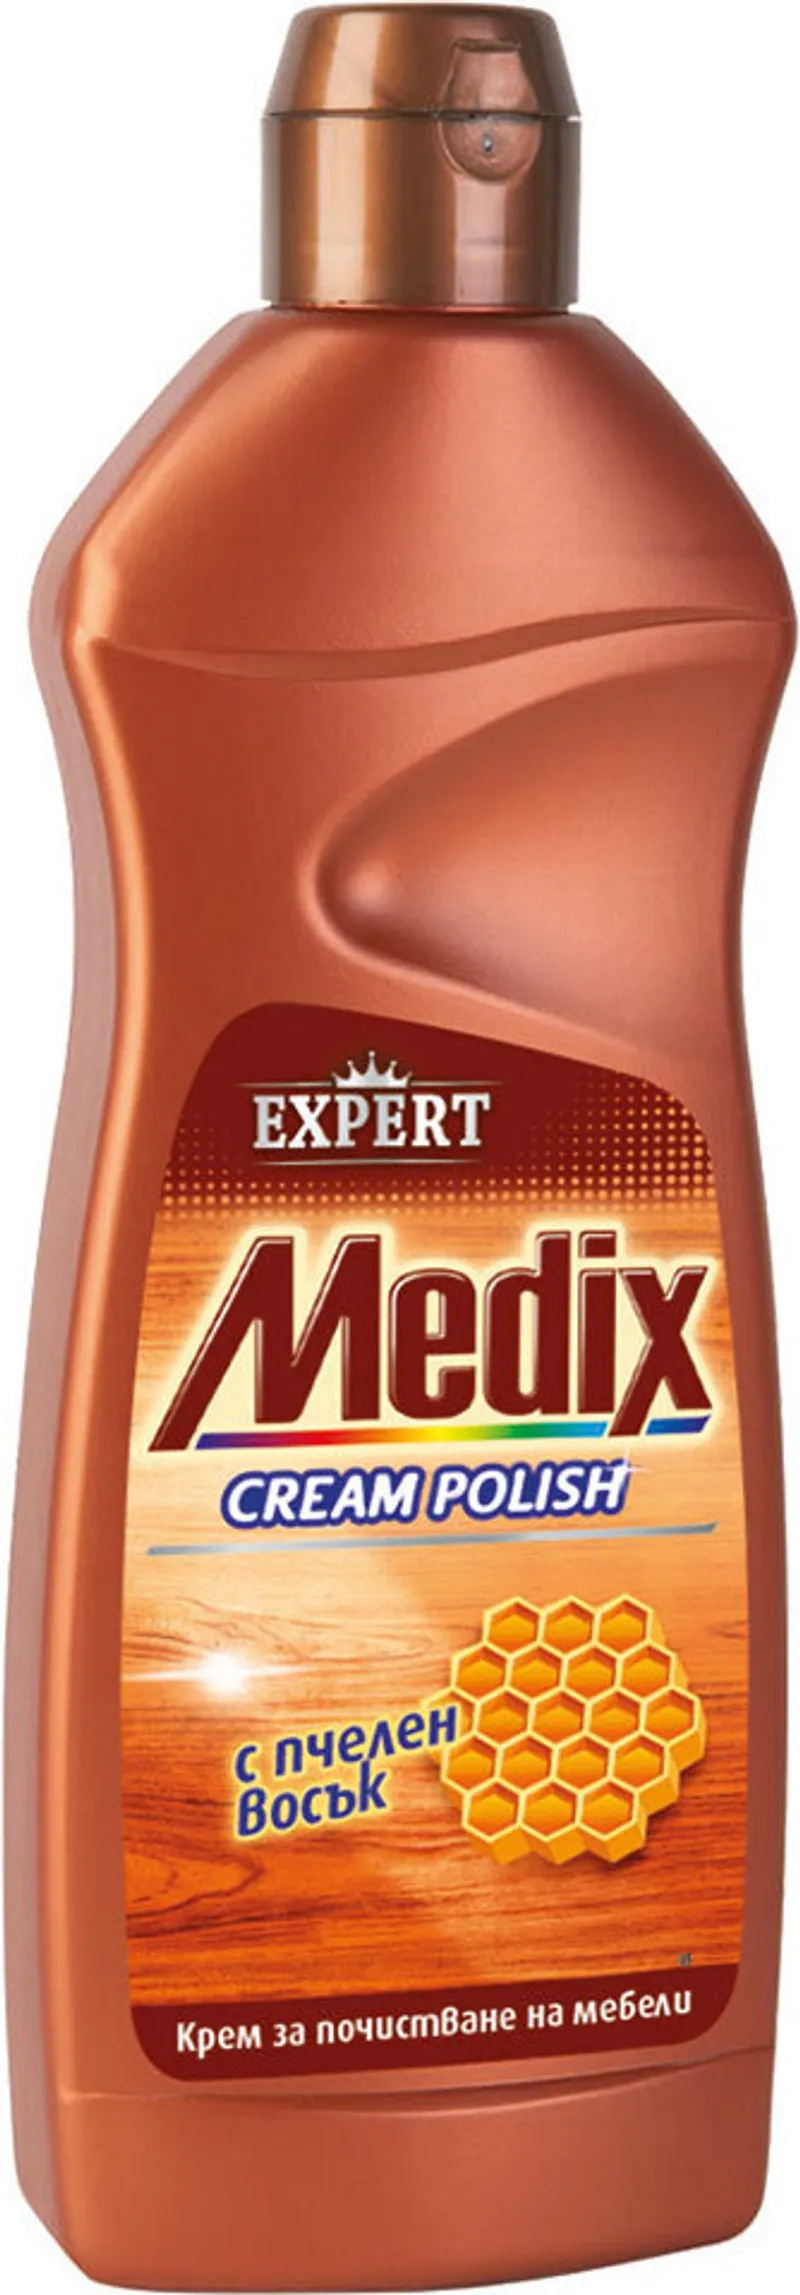 MEDIX Expert Cream Polish за мебели с пчелен восък 500 мл.